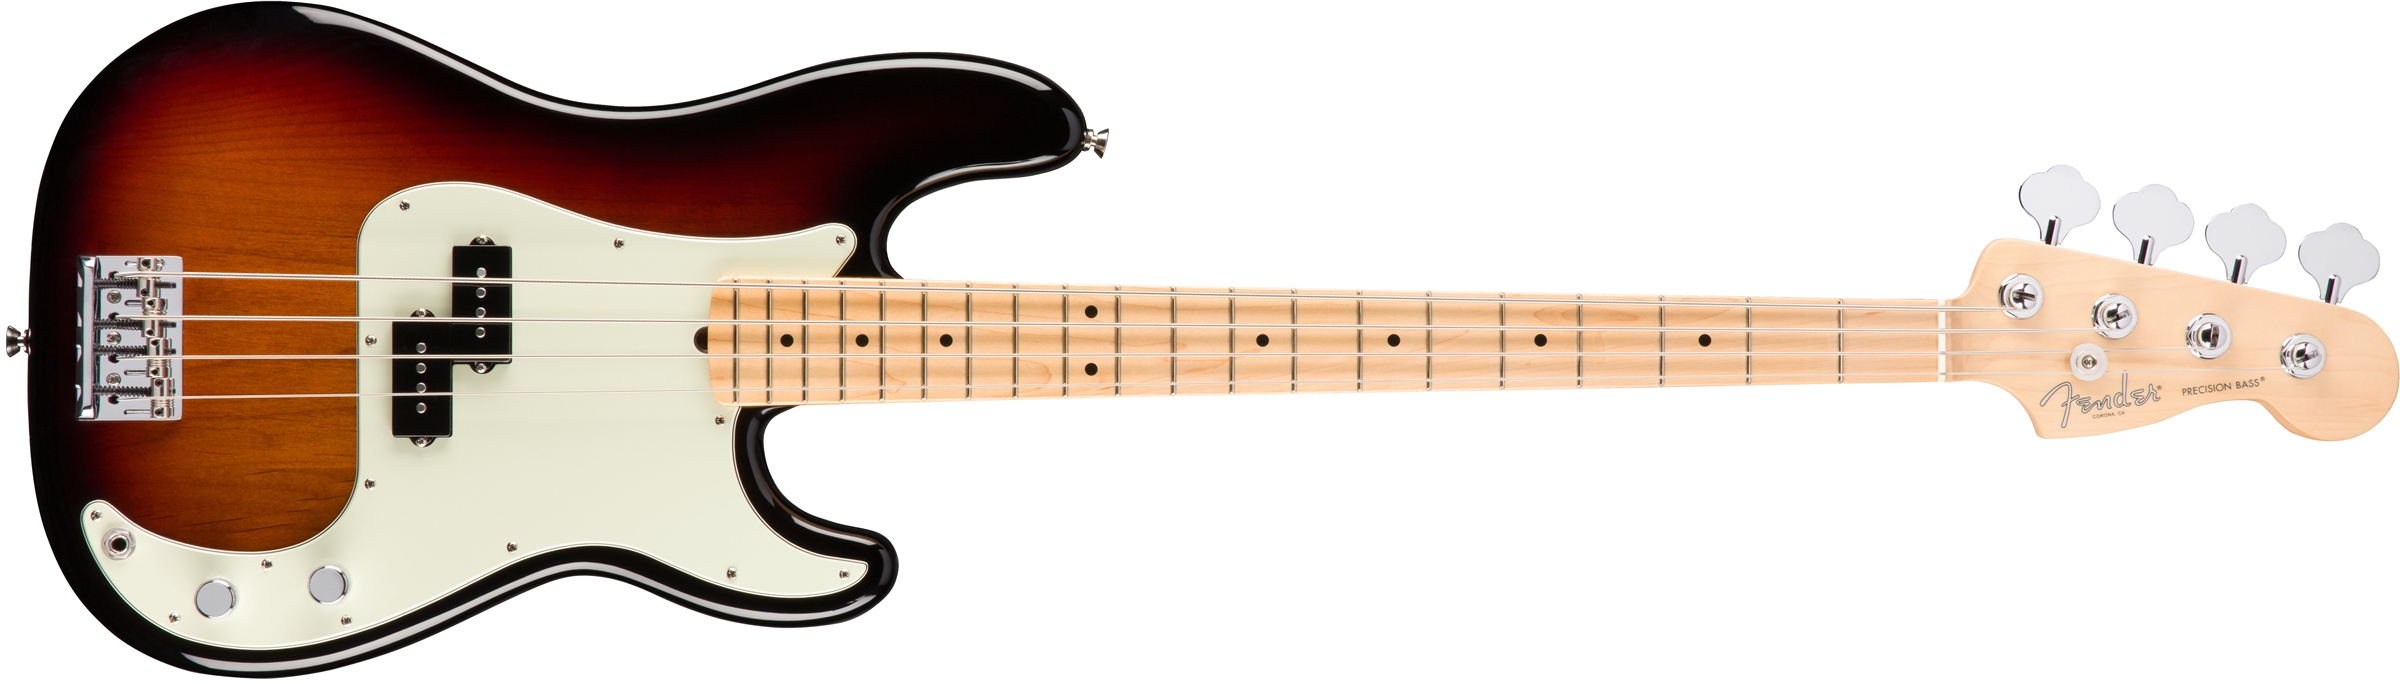 Fender Precision Bass American Professional 2017 Usa Mn - 3-color Sunburst - Bajo eléctrico de cuerpo sólido - Variation 1